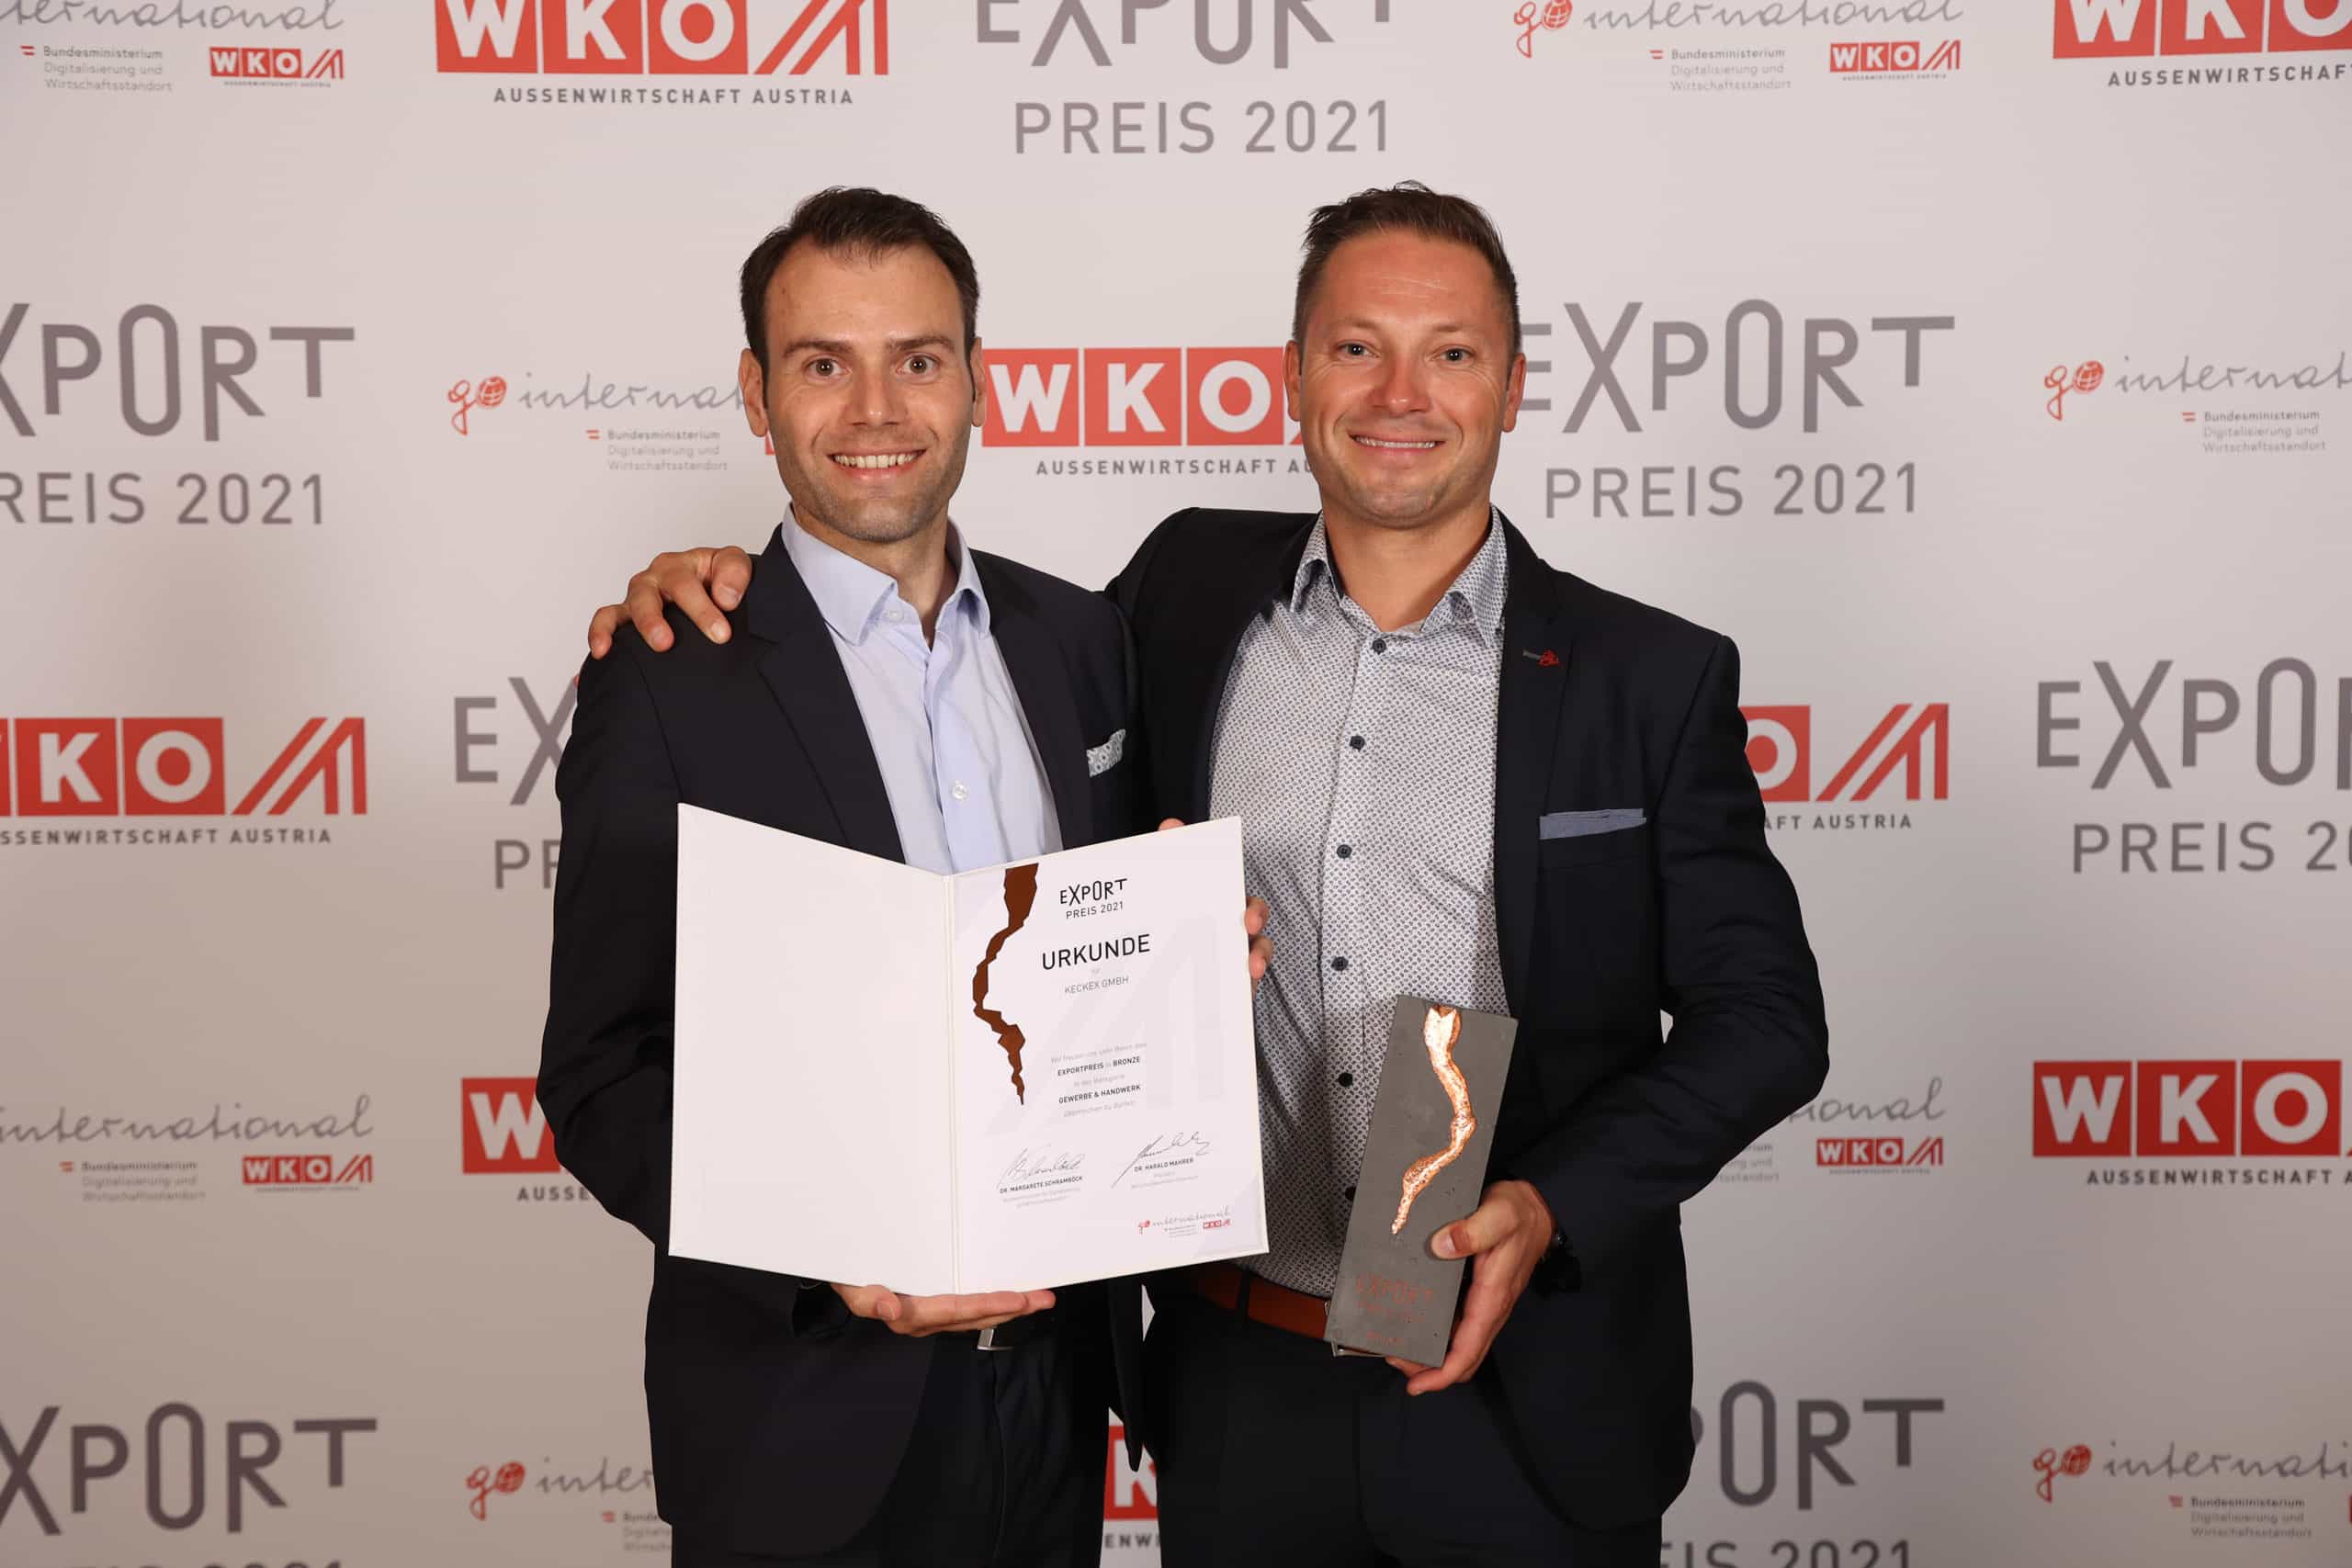 WKO_Exportpreis_2021_BRONZE